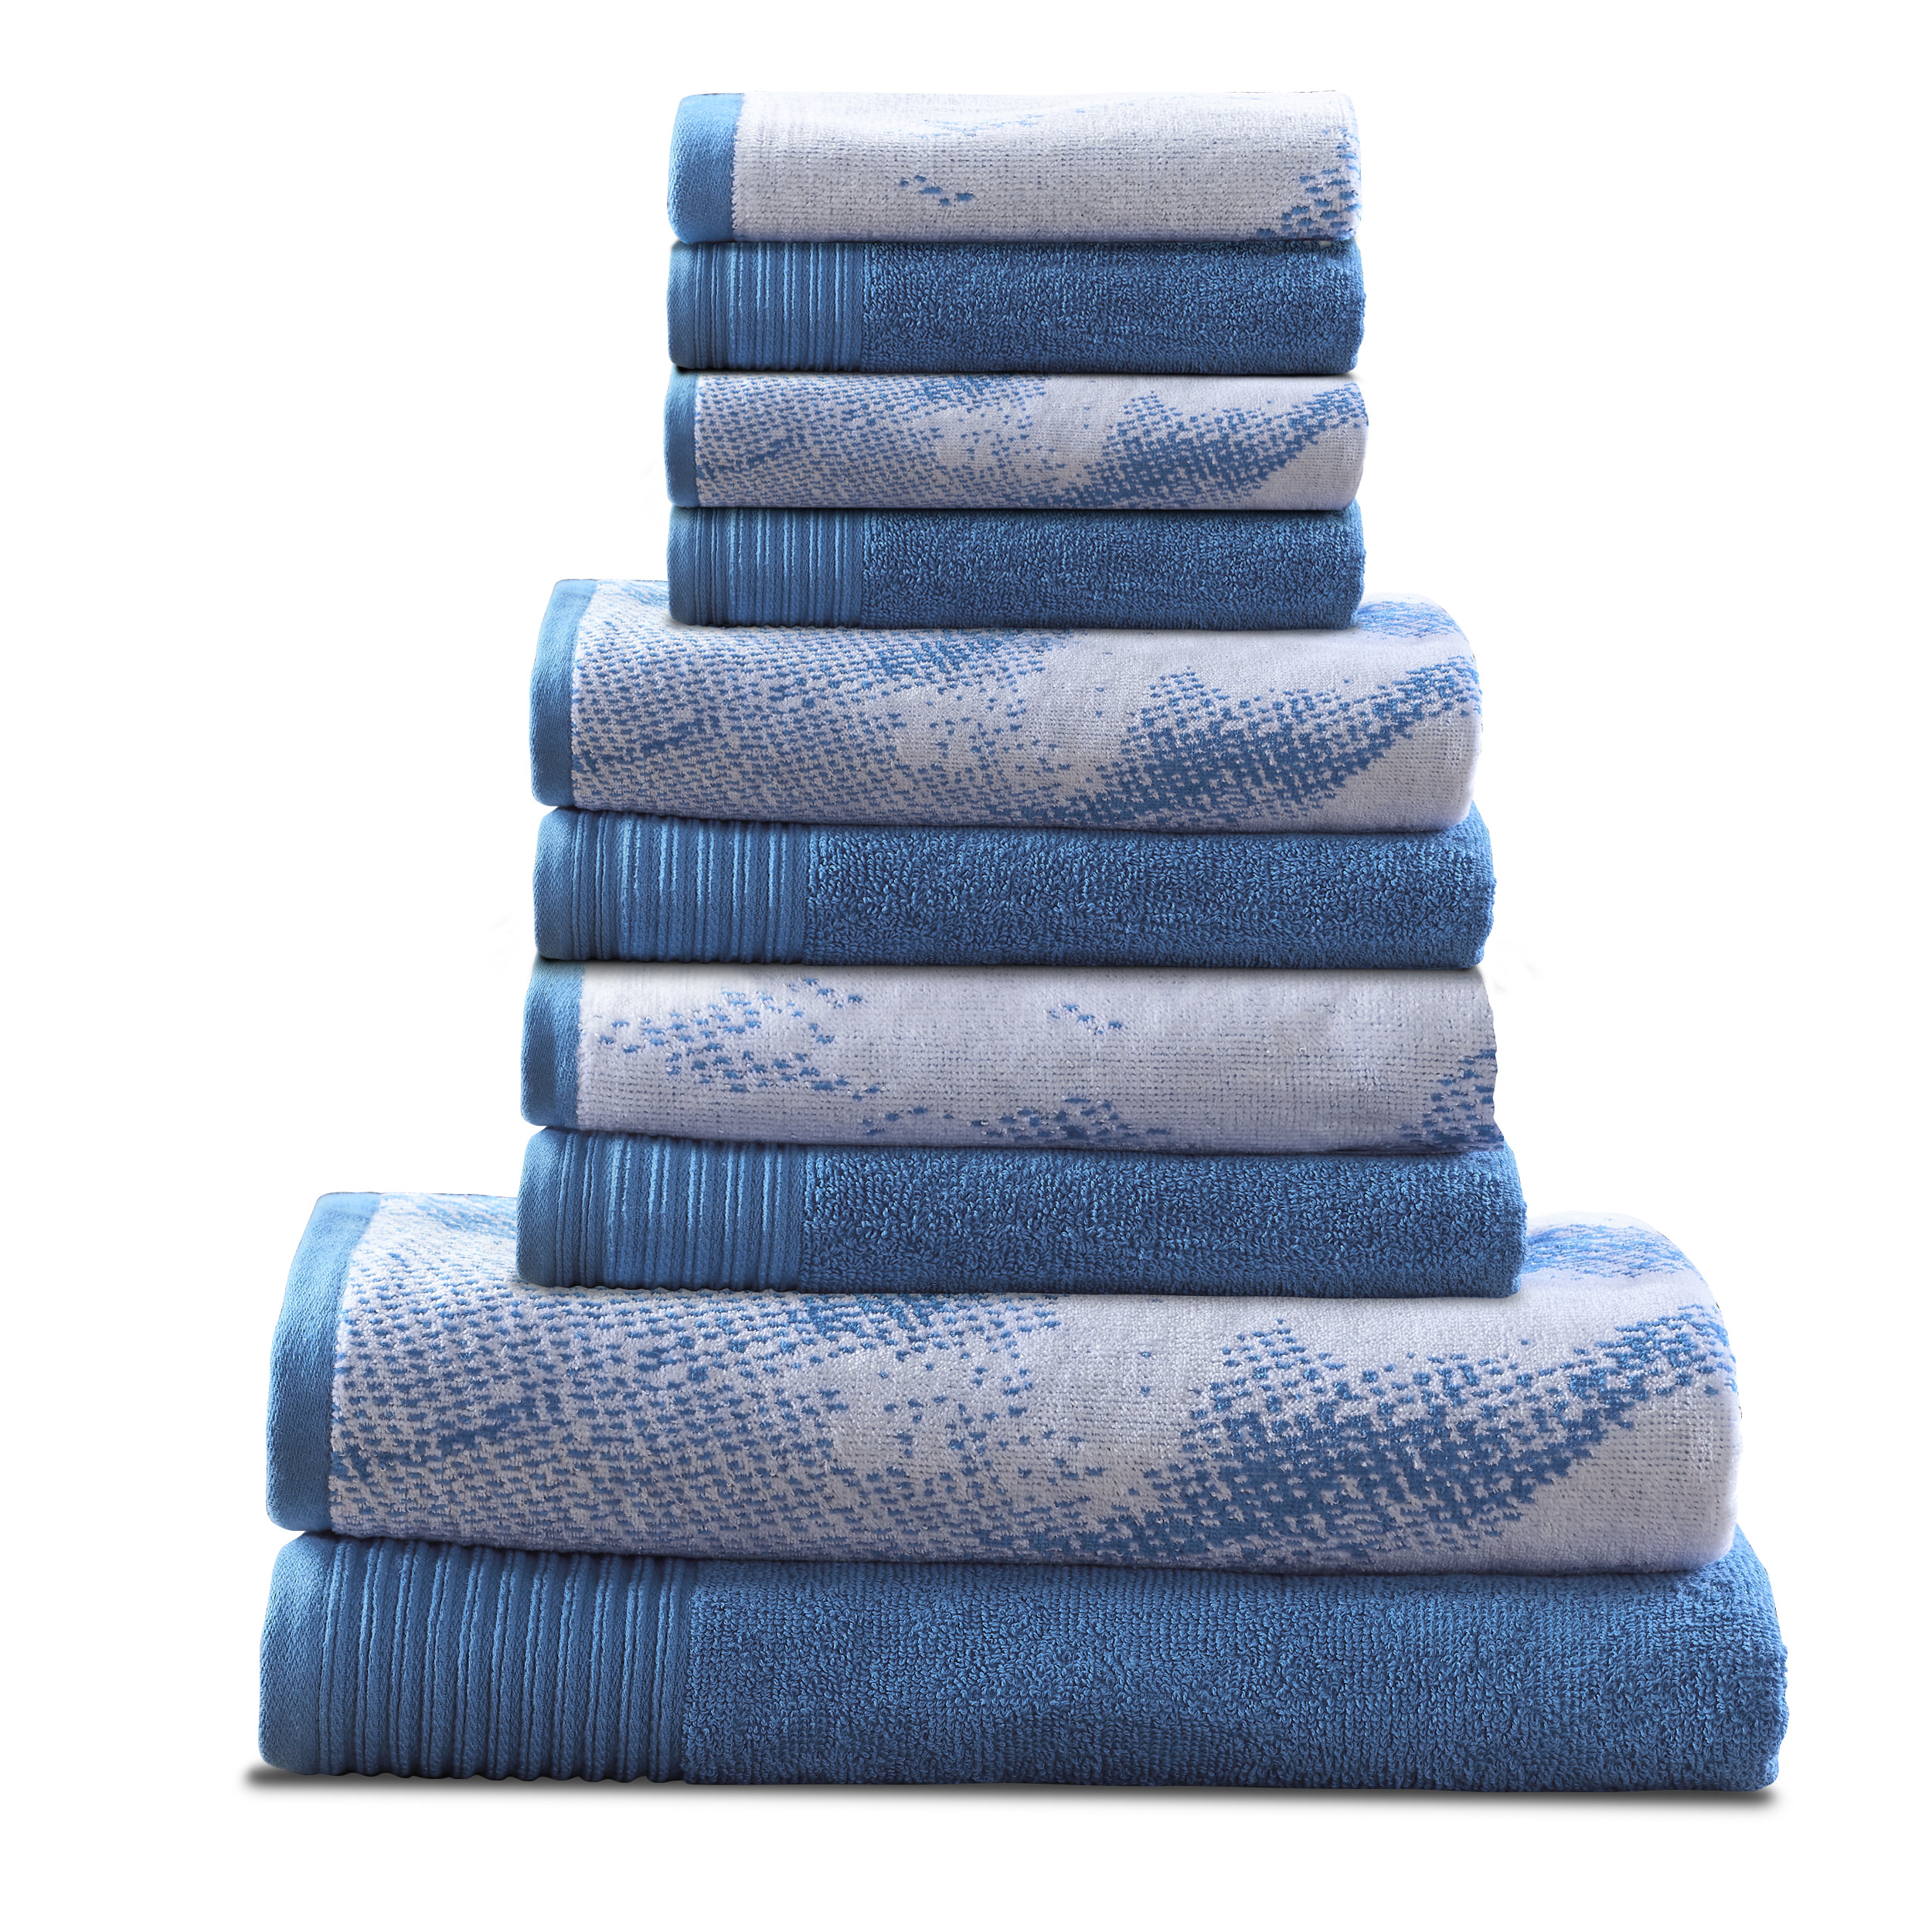 10 PC 100% Cotton Marble Effect Towel Set